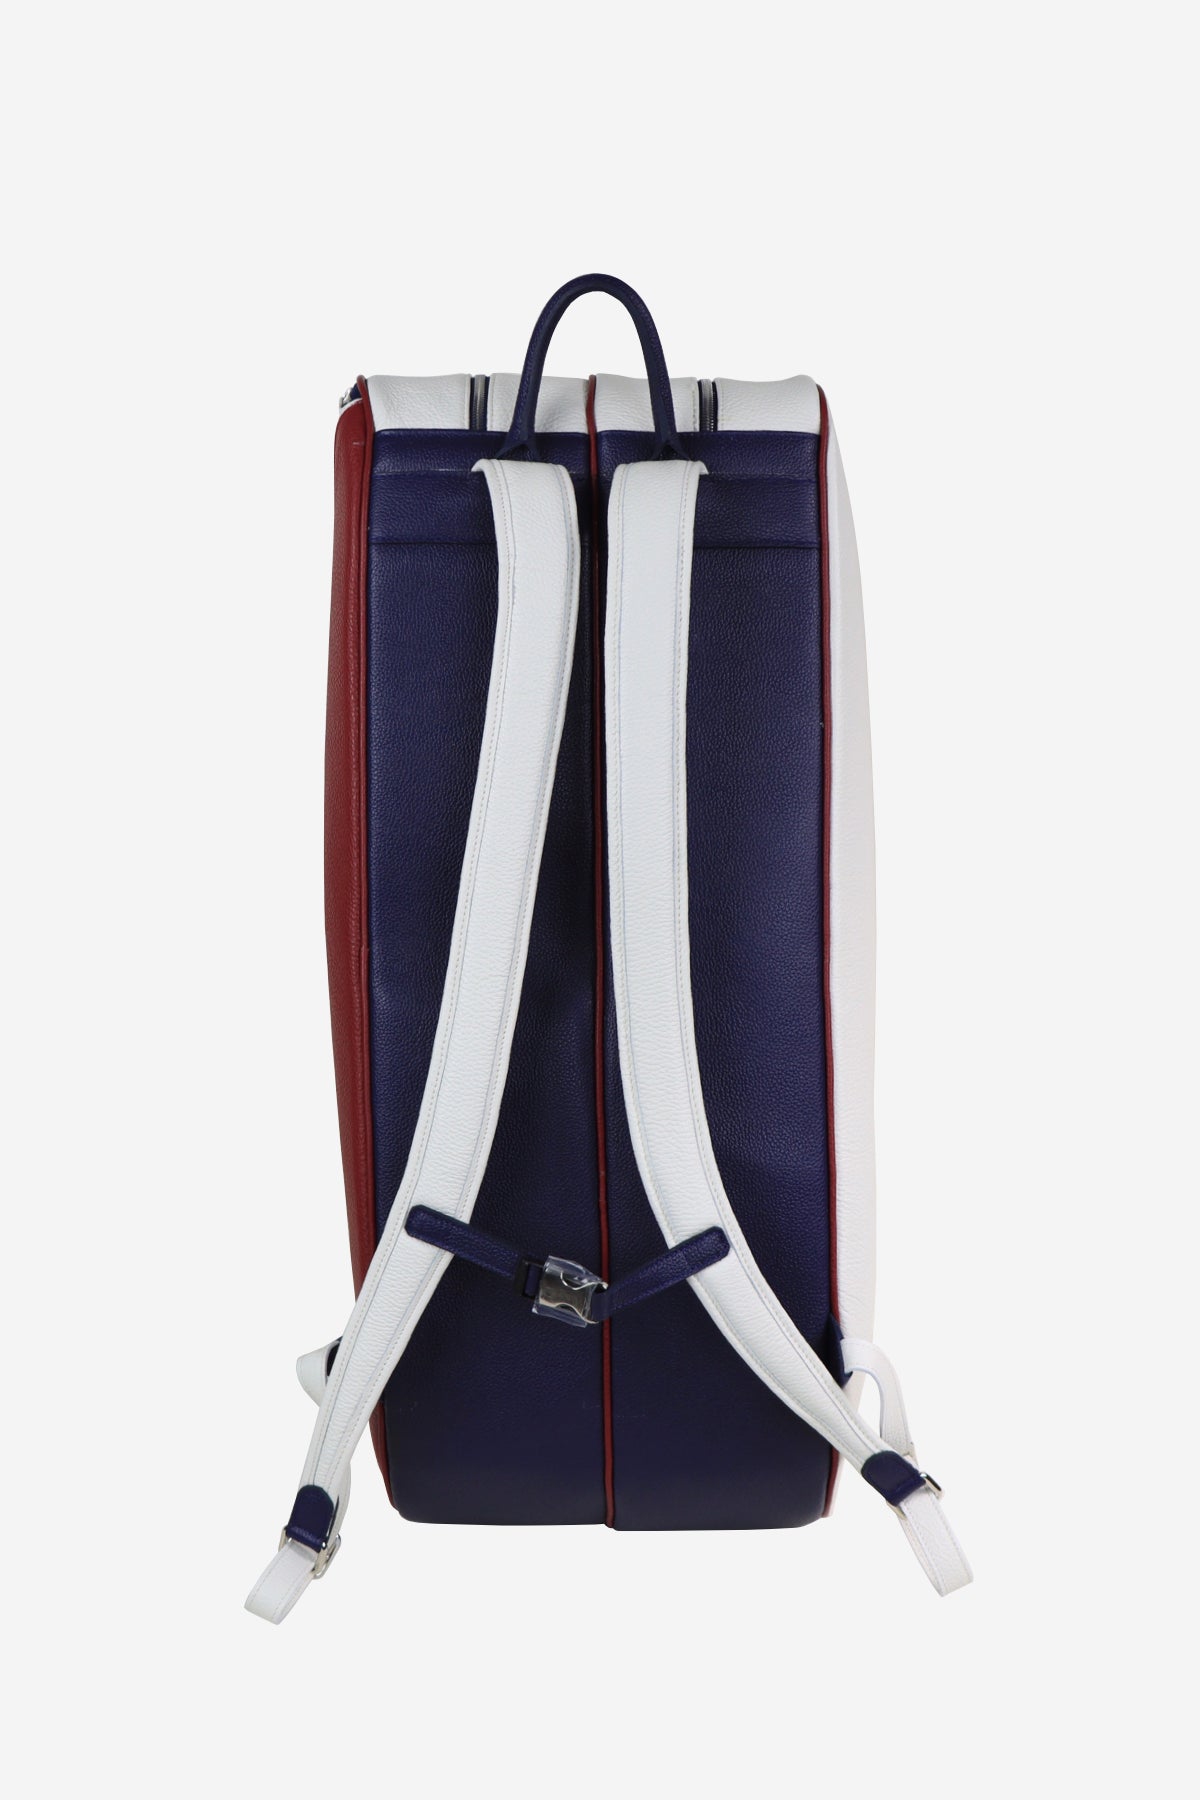 Classic Backpack Tennis Terrida su Artisia Store